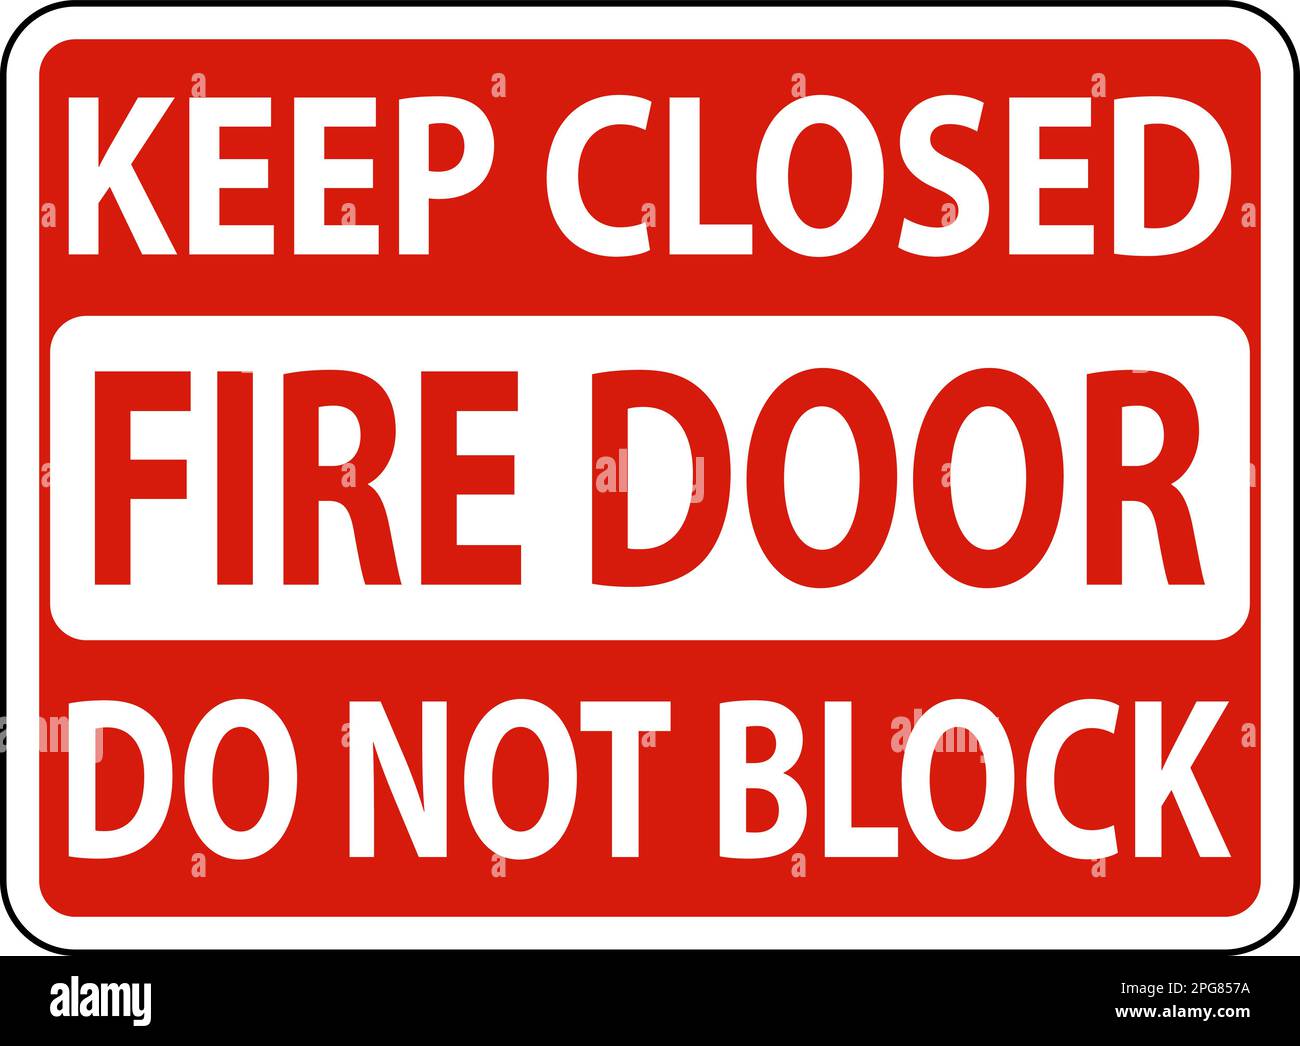 Keep Closed Do Not Block Fire Door Sign 2PG857A 